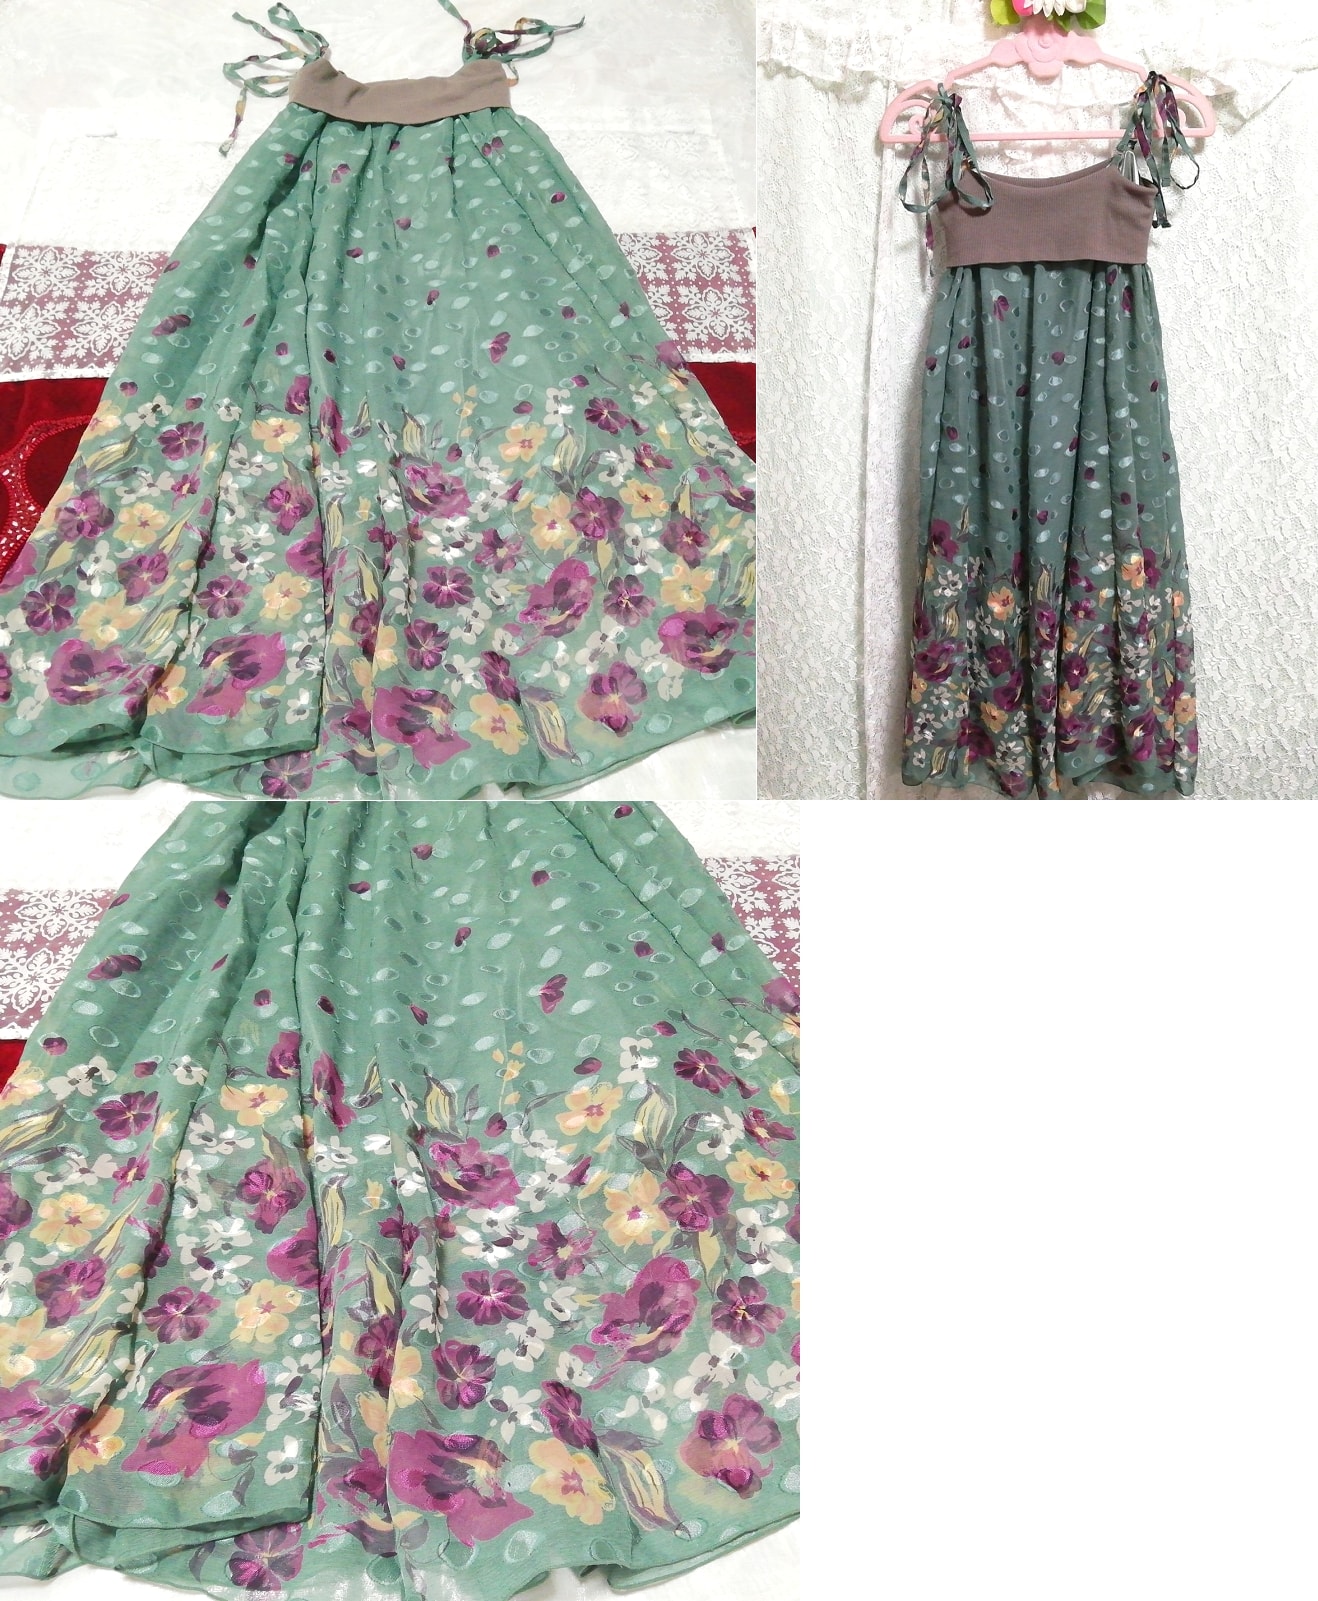 绿紫色花朵图案针织胸前雪纺裙睡衣睡袍吊带背心连衣裙, 时尚, 女士时装, 吊带背心